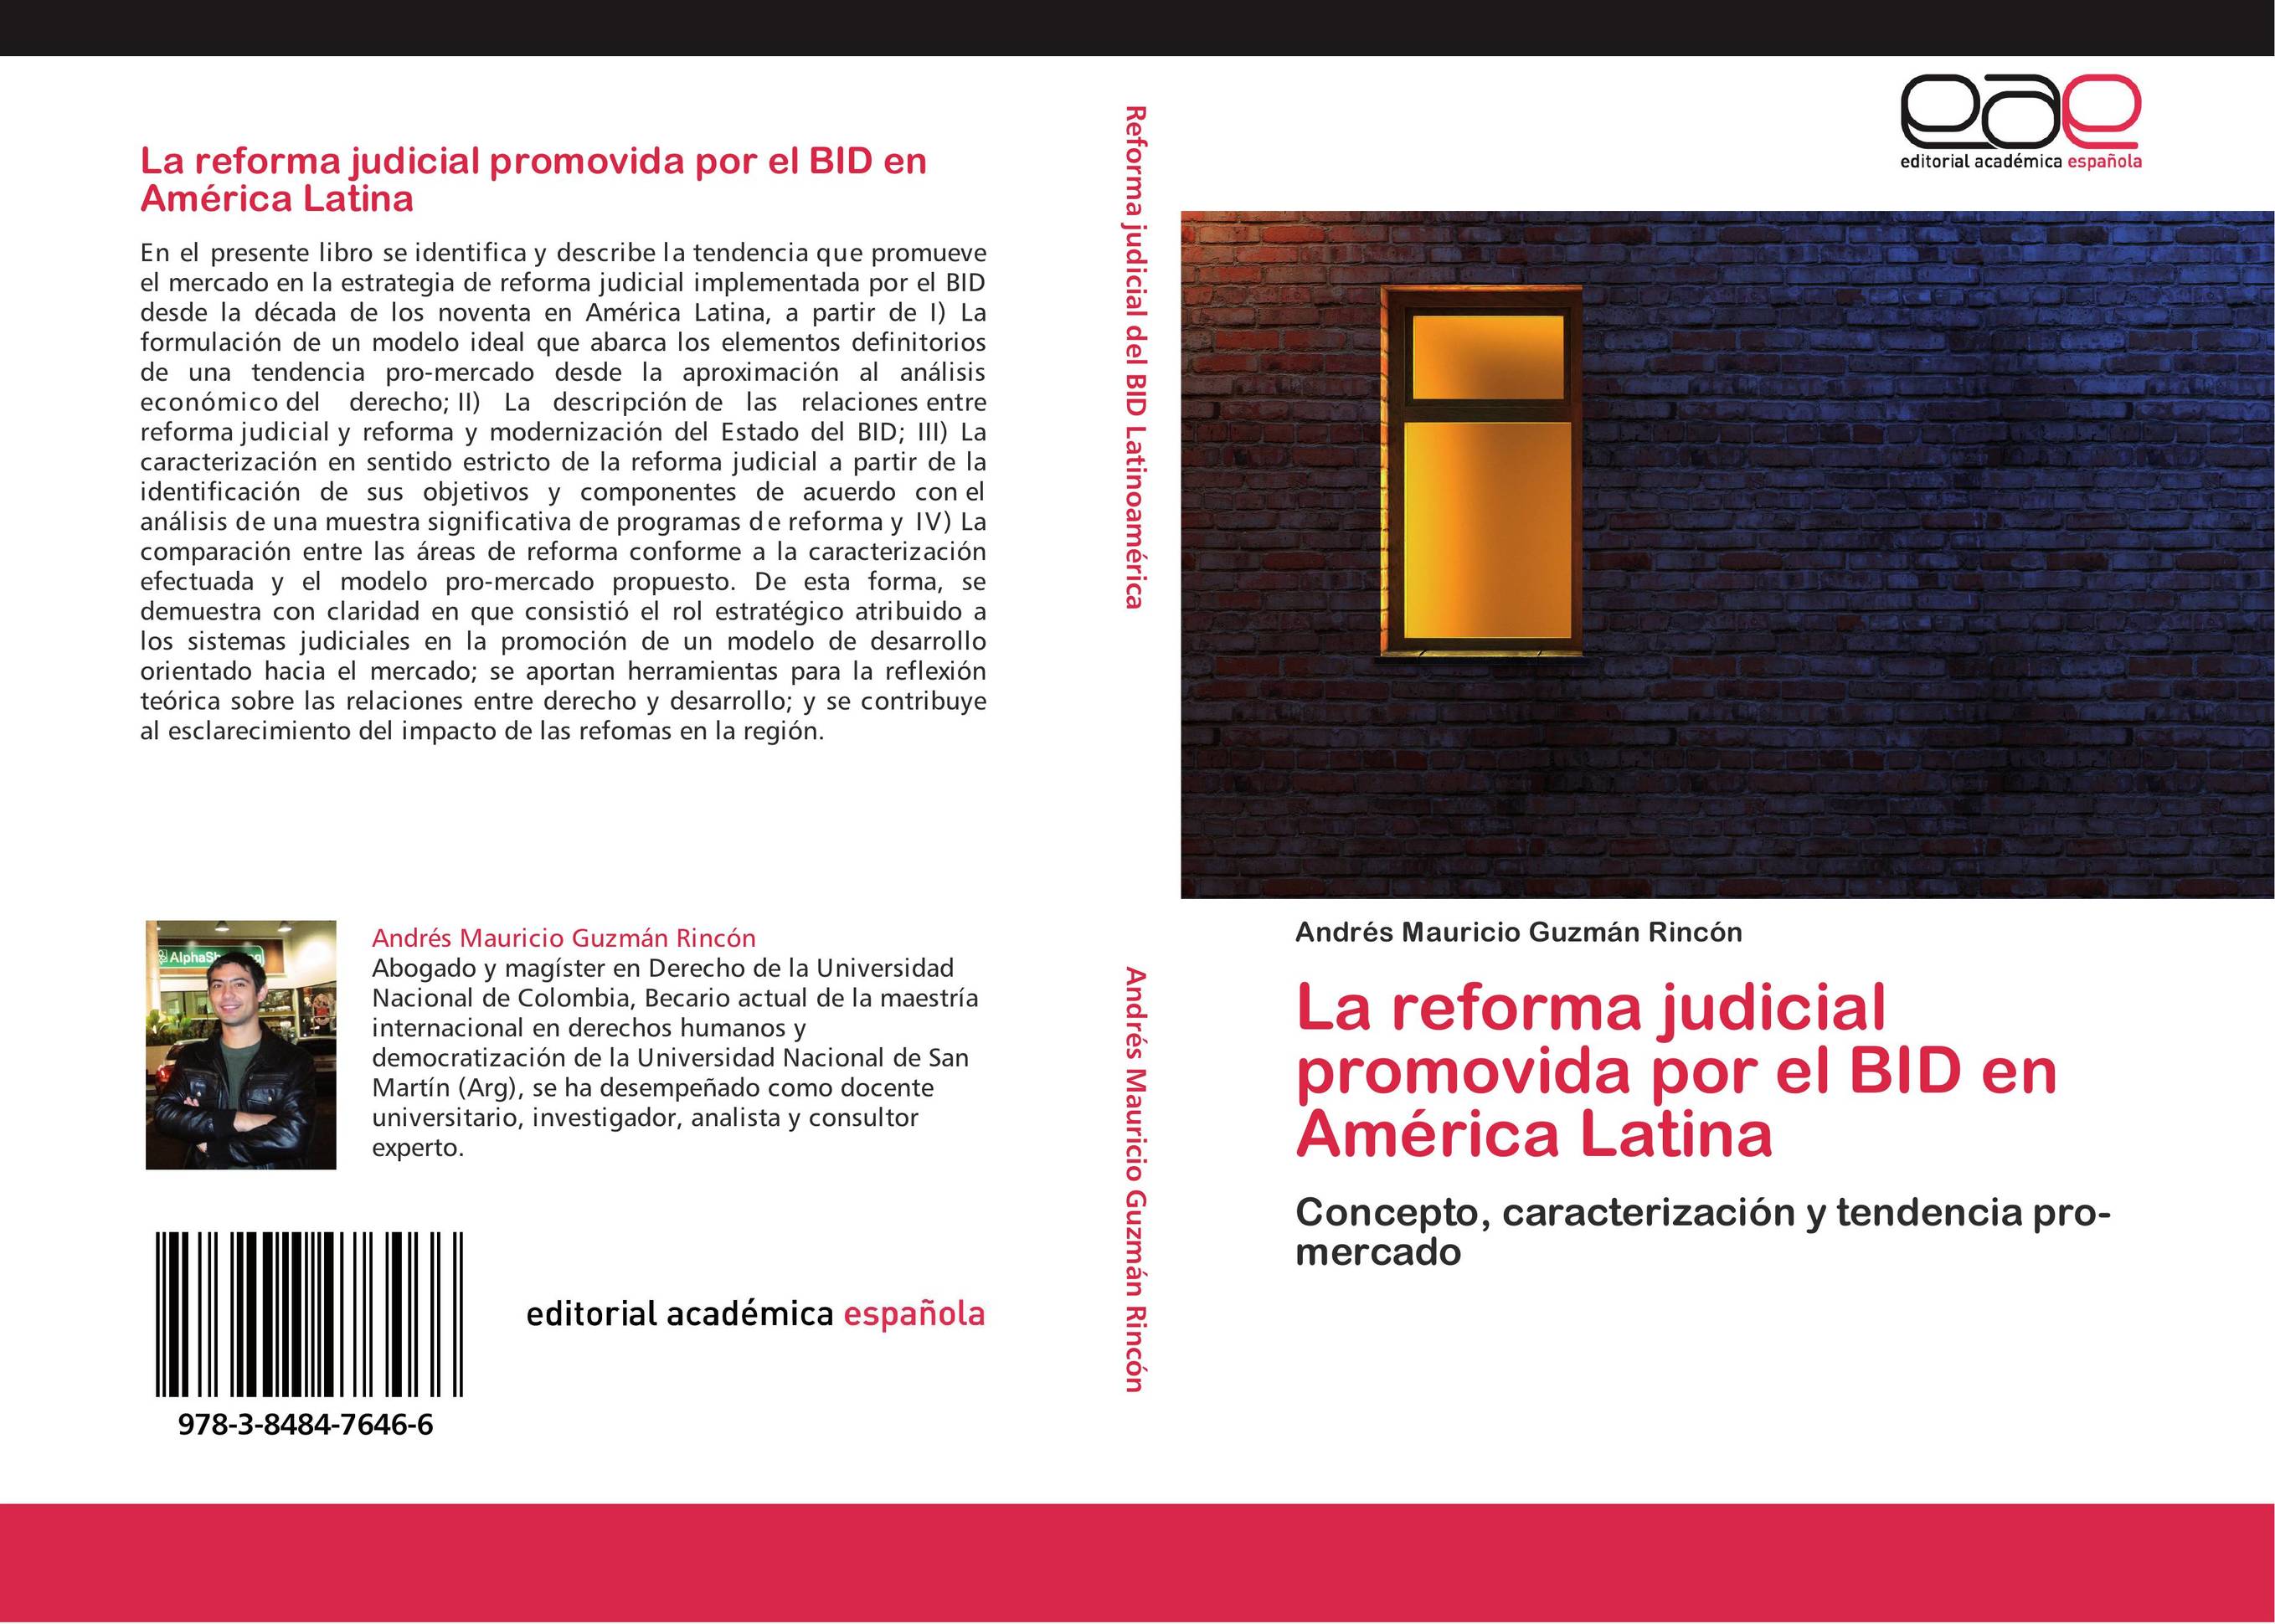 La reforma judicial promovida por el BID en América Latina